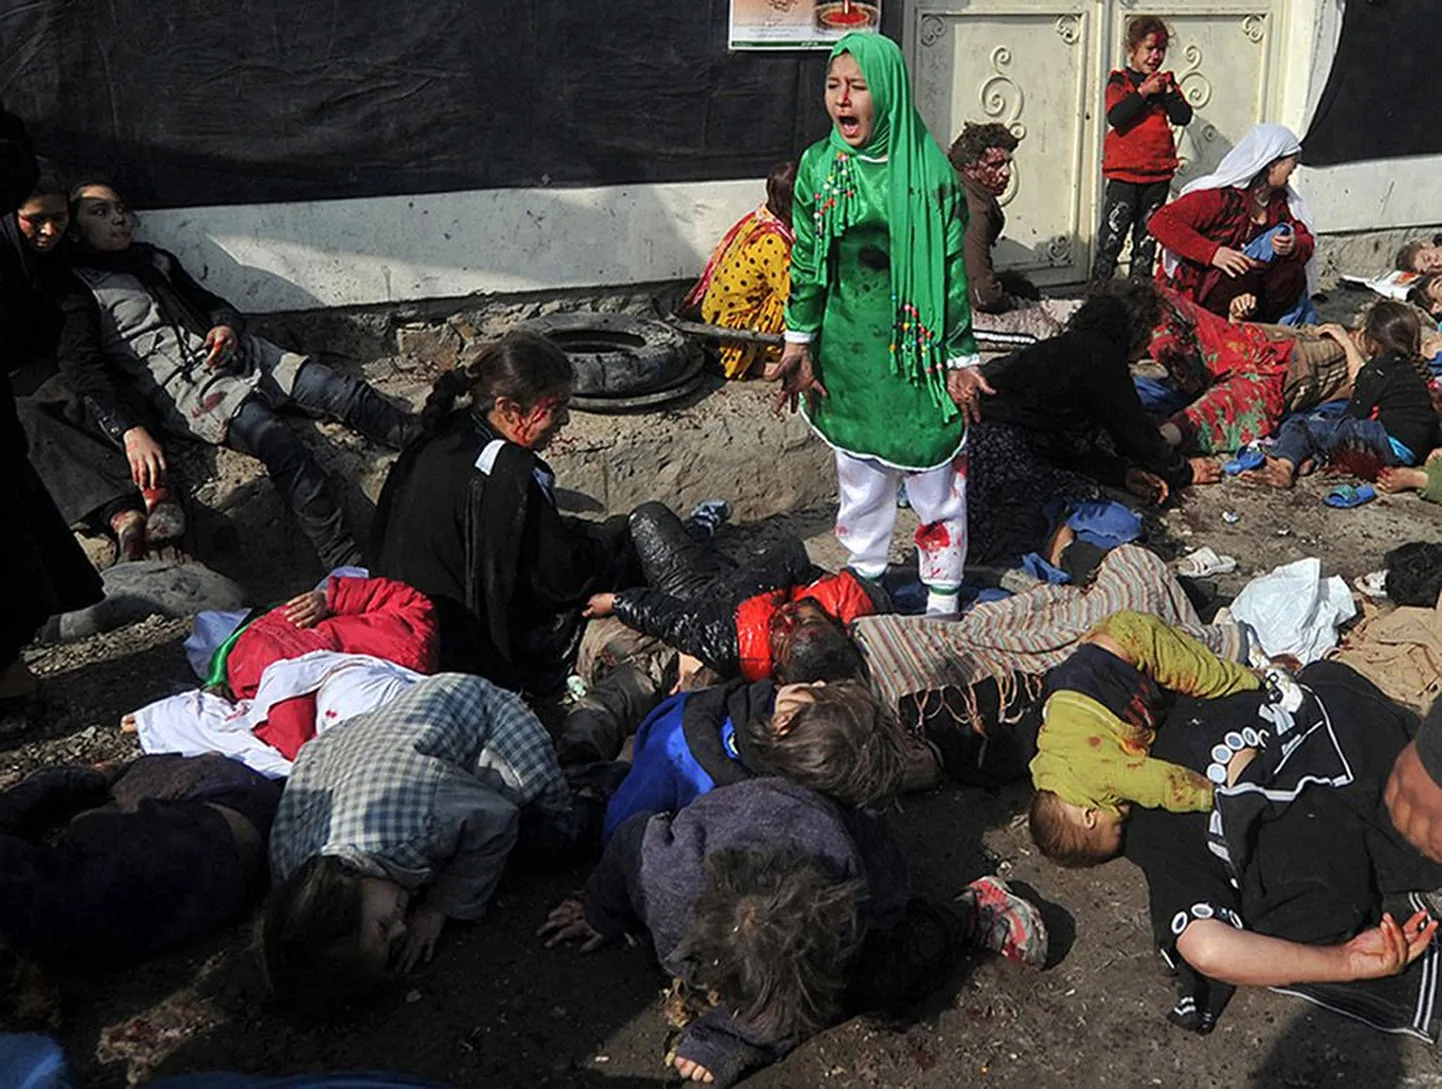 AFP fotograafi Massoud Hossaini Pulitzeri preemia saanud võidufoto: 12-aastane Tarana Akbari, tuntud ka kui «tüdruk rohelises kleidis», jäädvustatuna hetk pärast suitsiidirünnakut Abul Fazeli pühamus Kabulis eelmise aasta 6. detsembril.